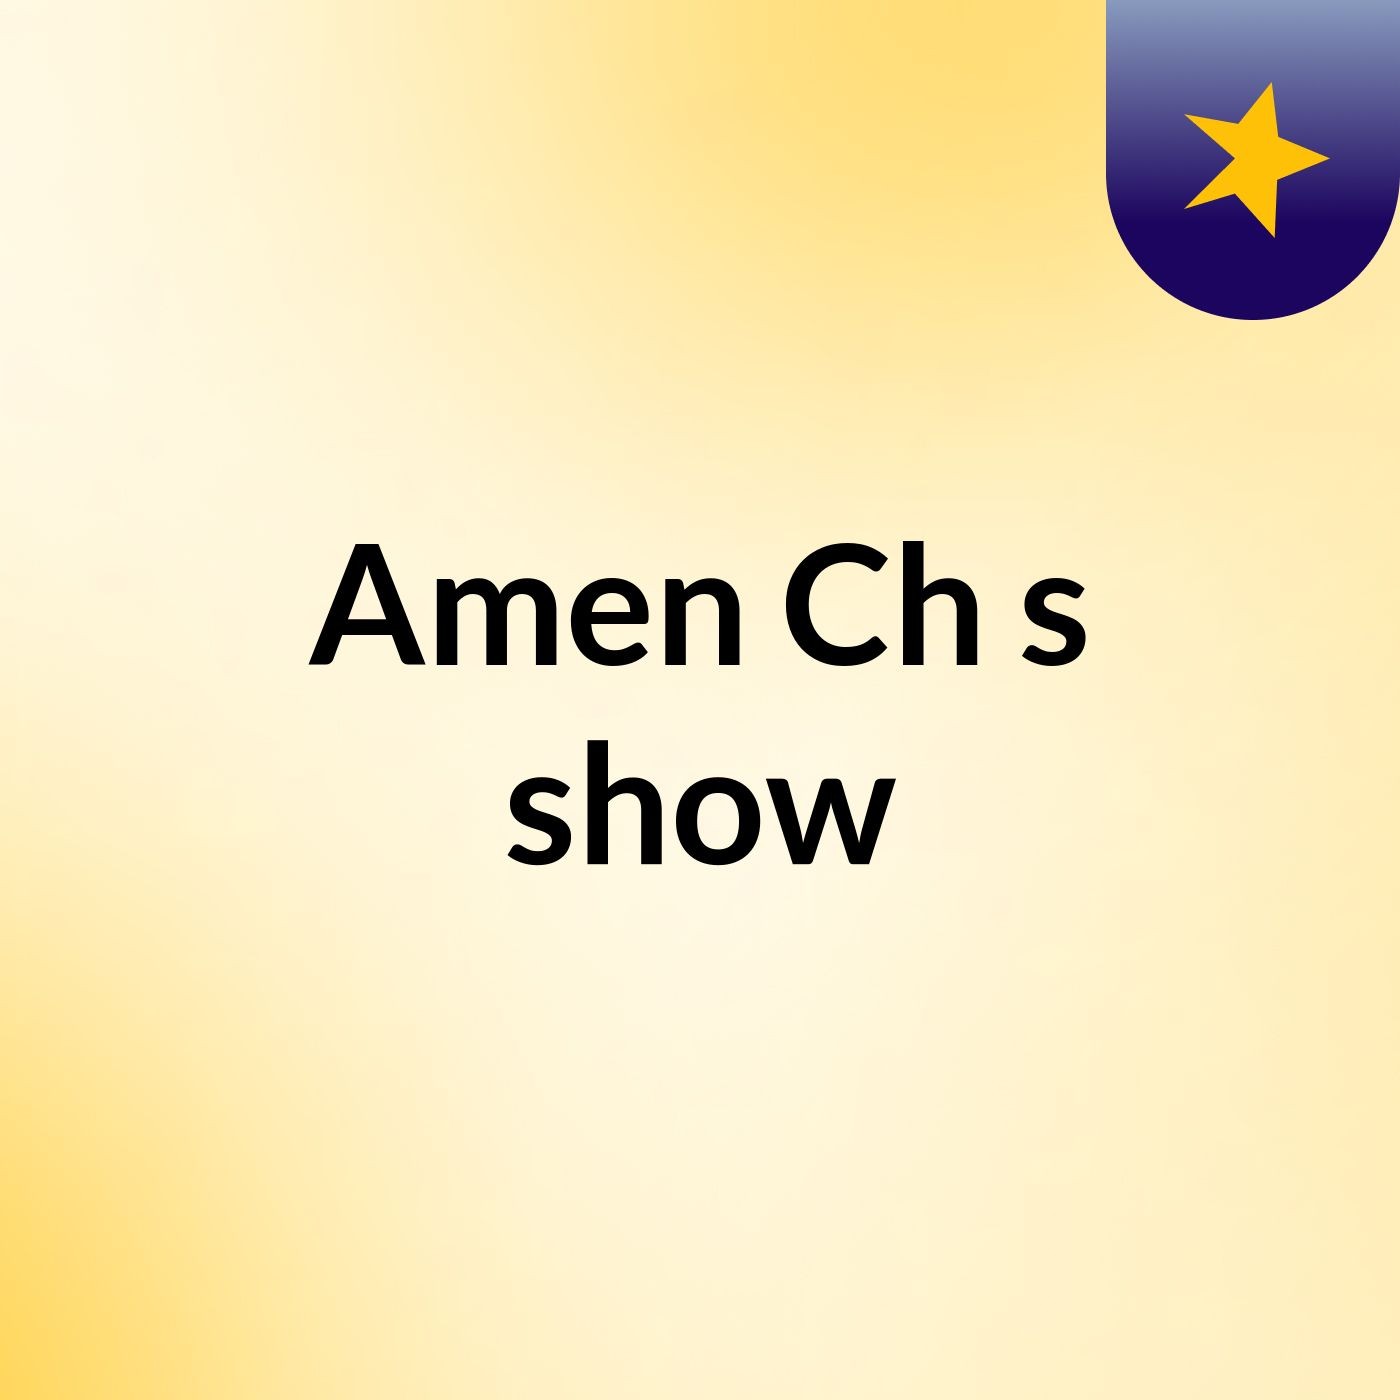 Amen Ch's show